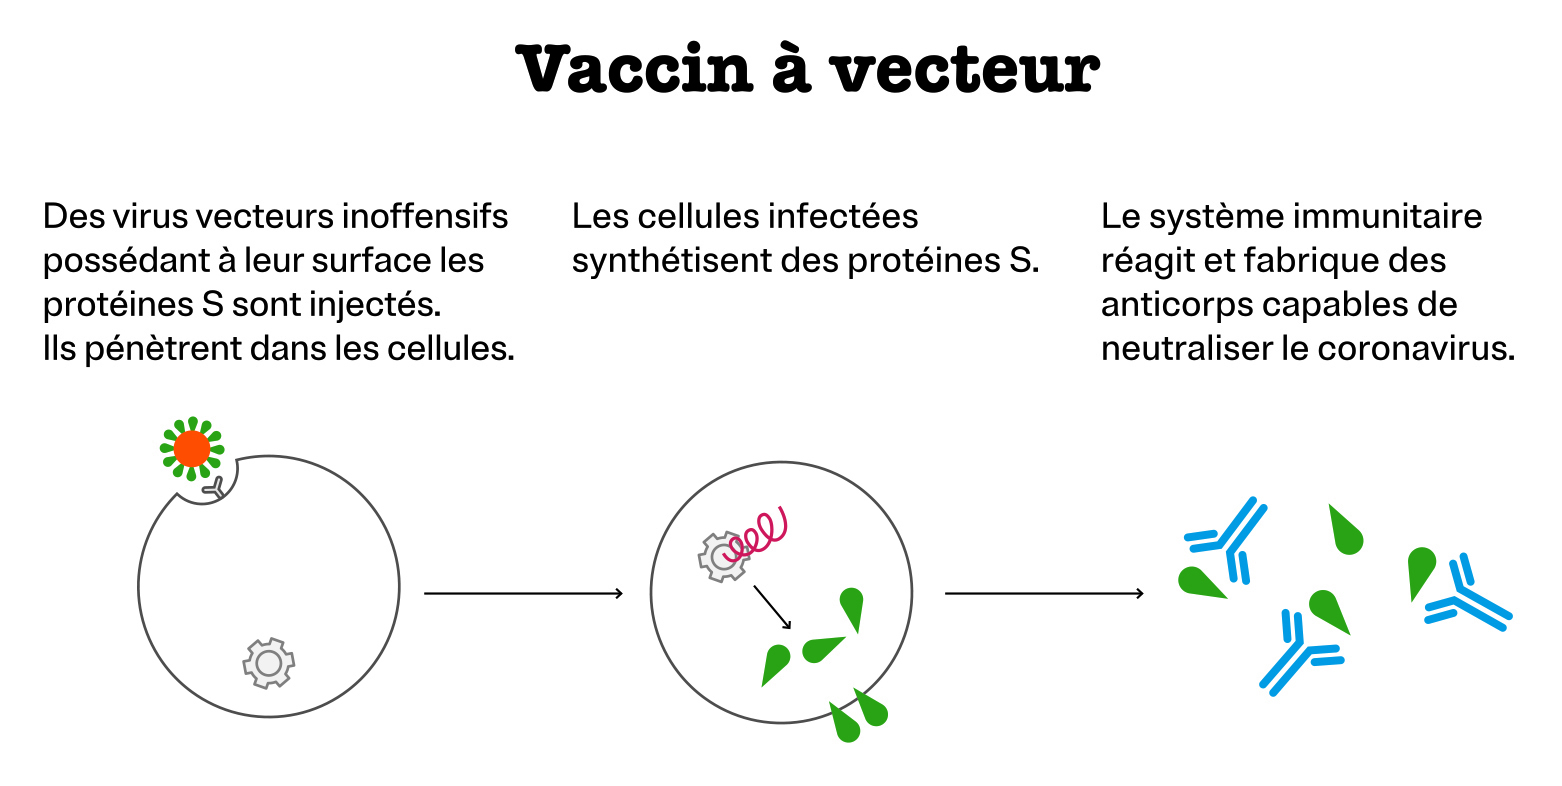 Vaccin à vecteur : Des virus vecteurs inoffensifs possédant à leur surface les protéines S sont injectés. Ils pénètrent dans les cellules. Les cellules infectées synthétisent des protéines S. Le système immunitaire réagit et fabrique des anticorps capable de neutraliser le coronavirus.